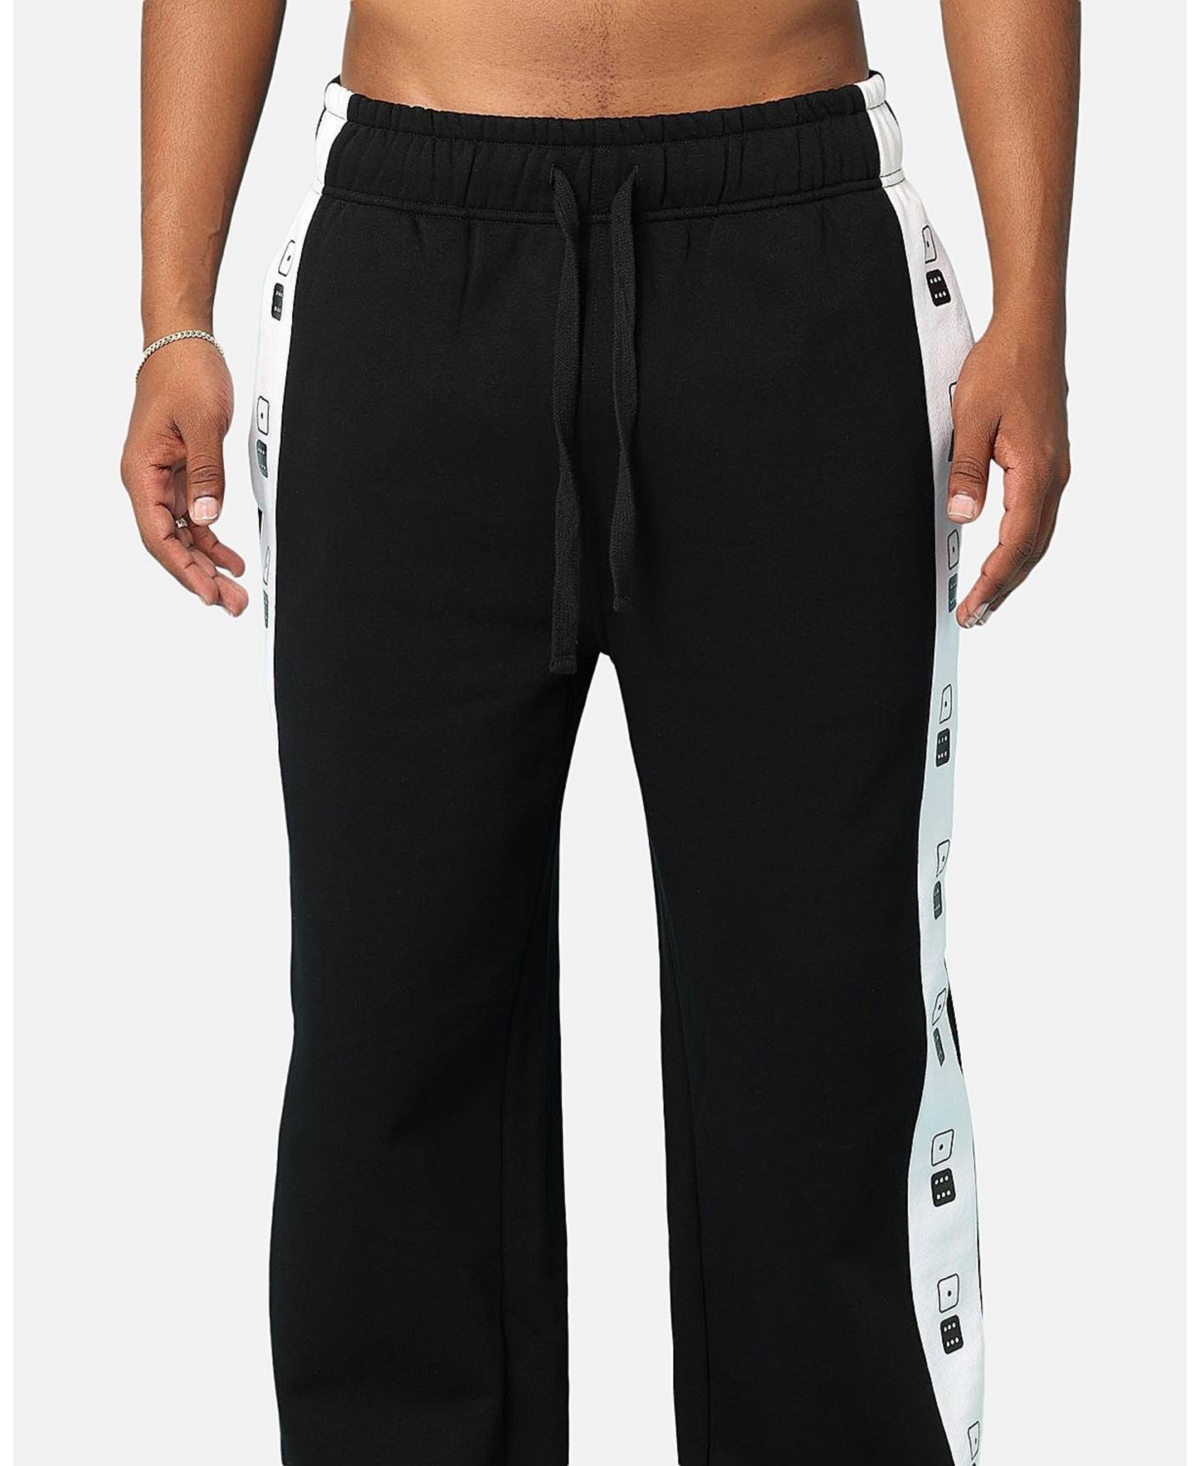 Men's High Roller Sweatpants - XLarge, Black - Black